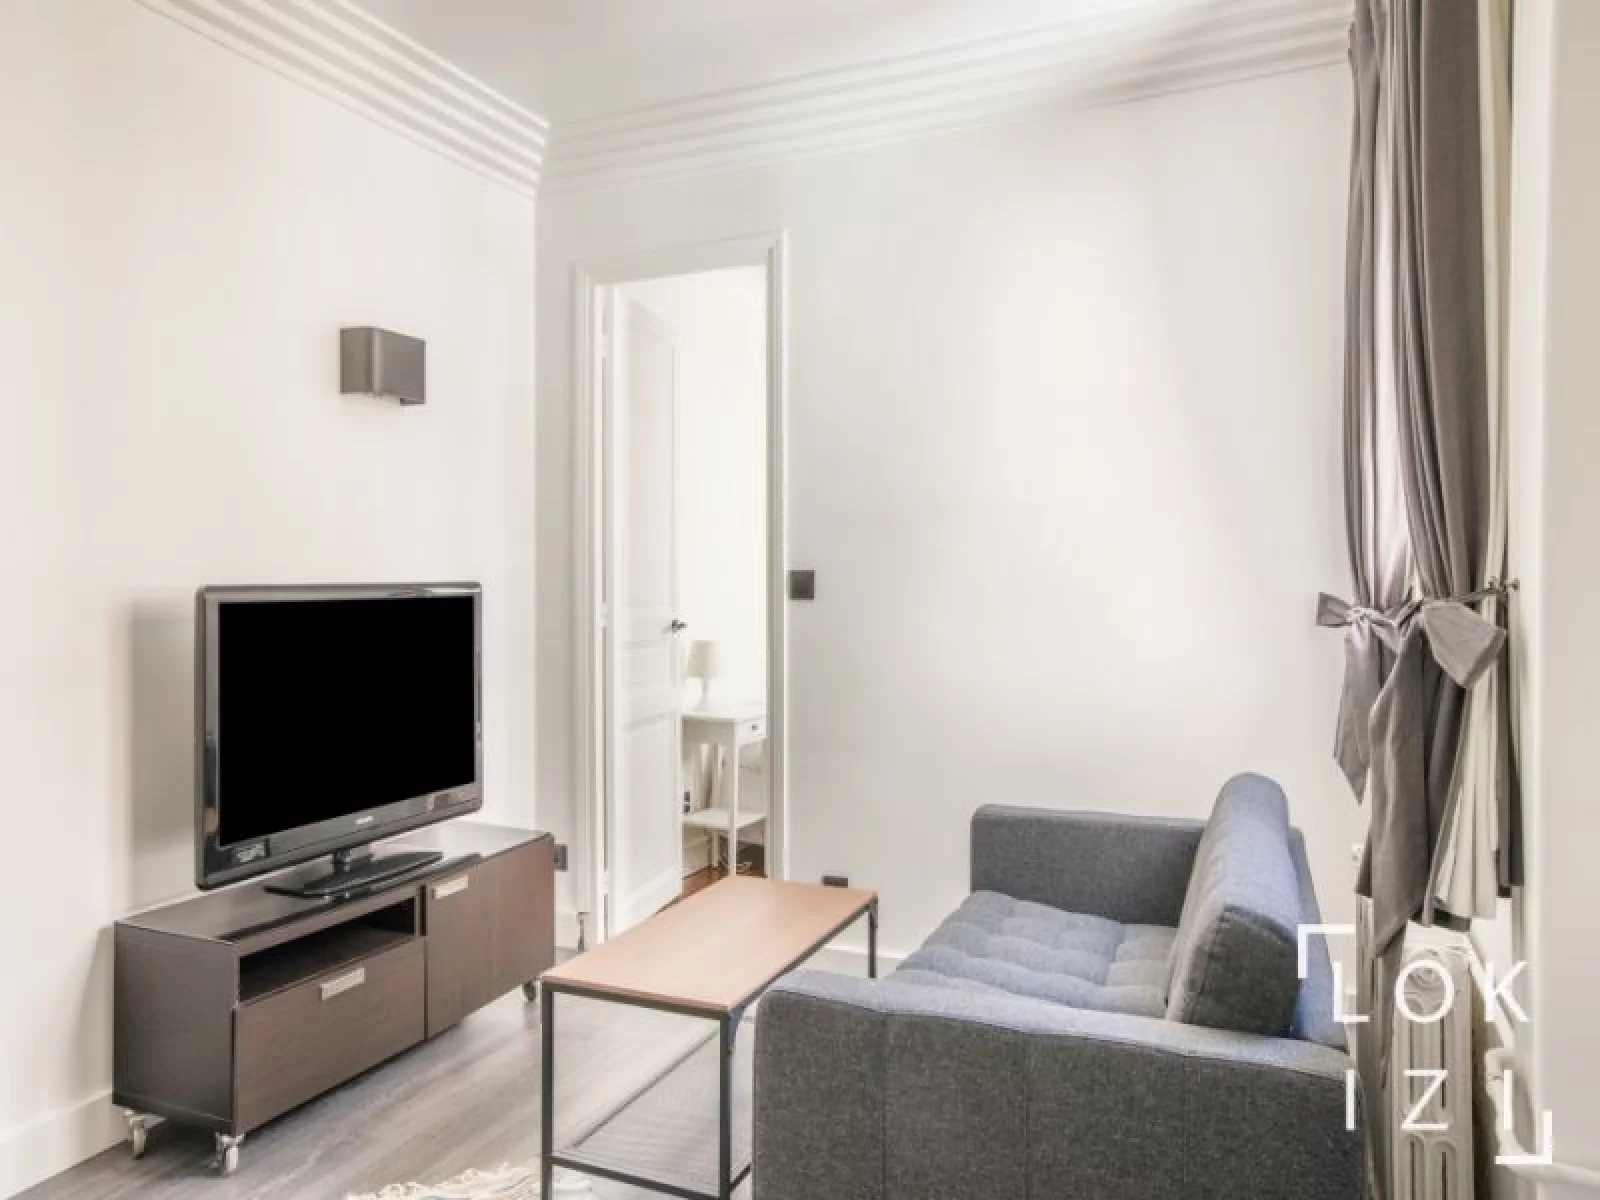 Location appartement meublé 2 pièces 36m² (Paris - 20ème) 